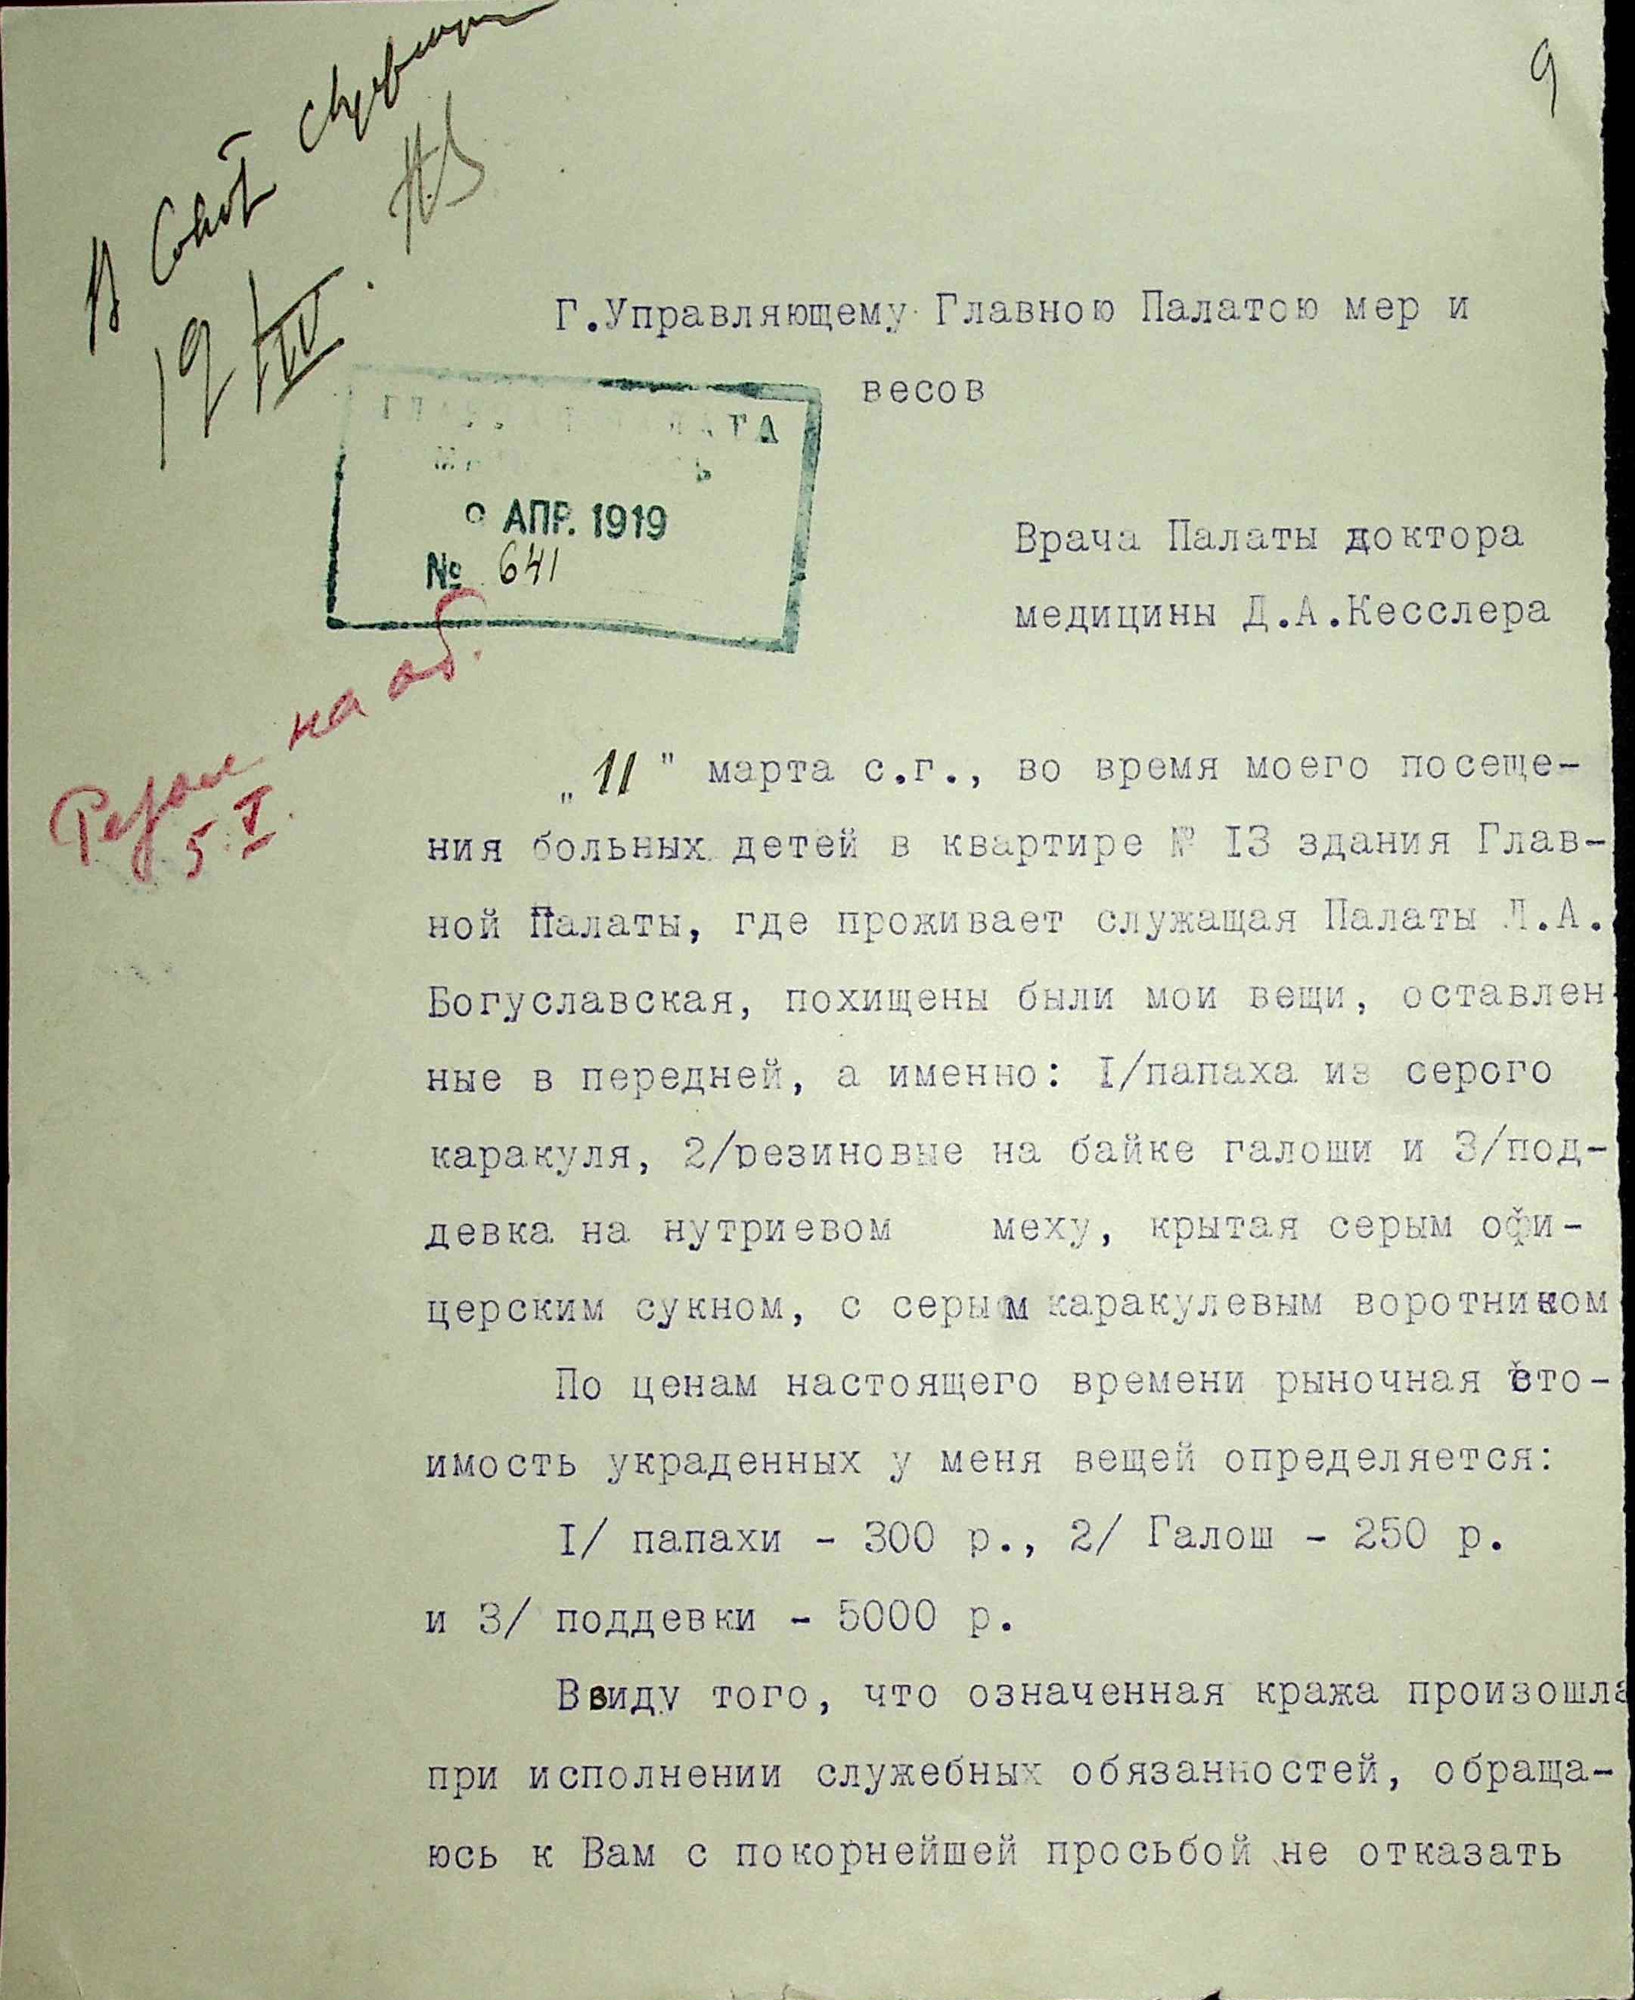 Заявление врача Главной палаты доктора медицины Д.А.Кесслера от 19 апреля 1919 г.